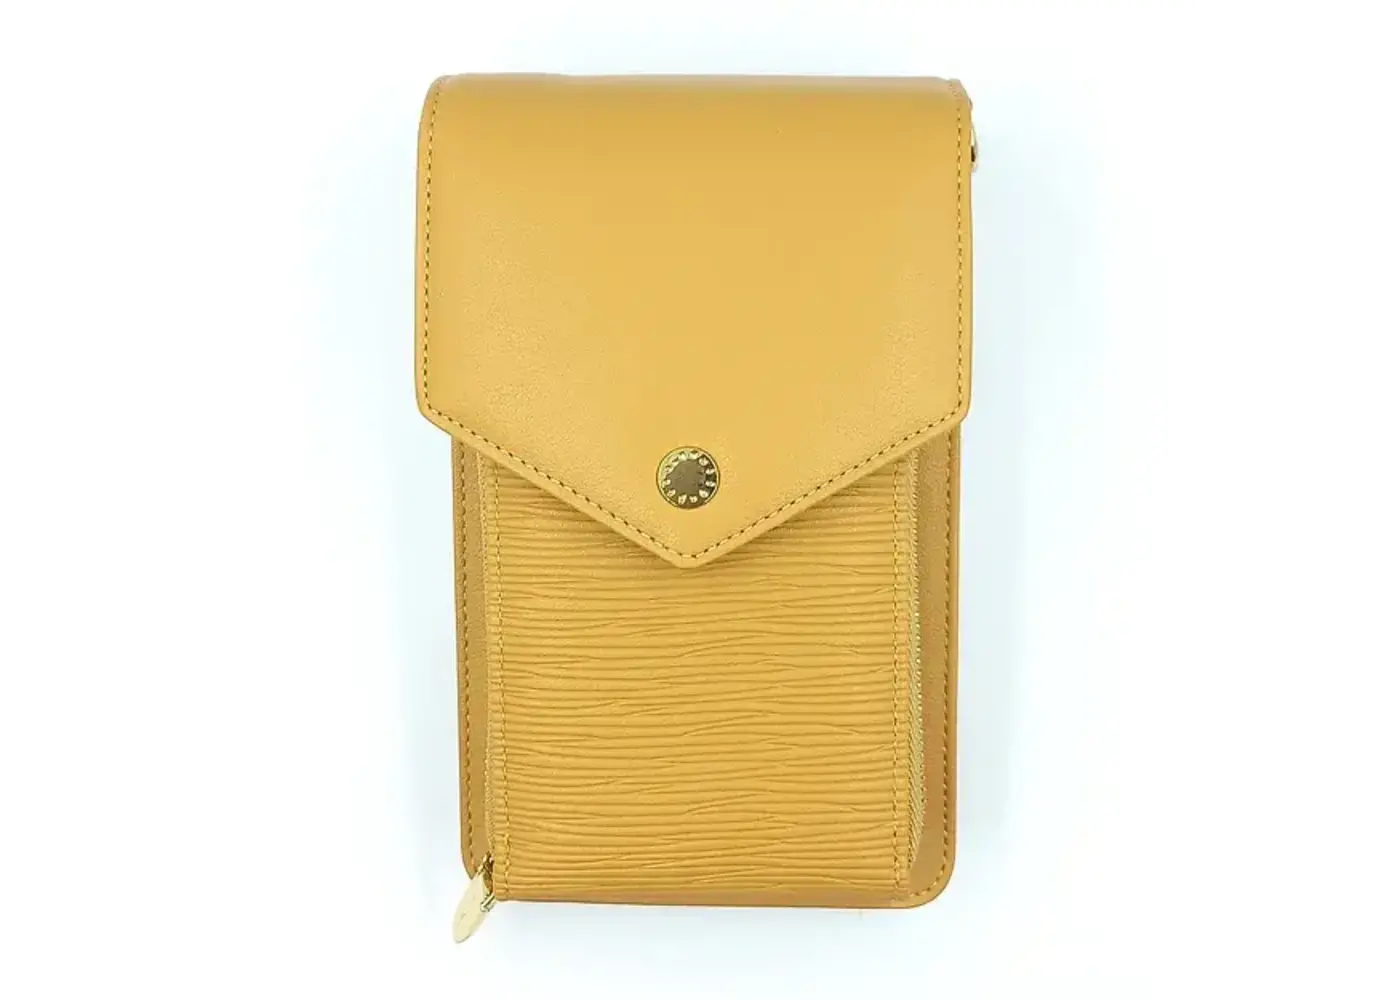 Zeneeba Front pocket crossover handbag